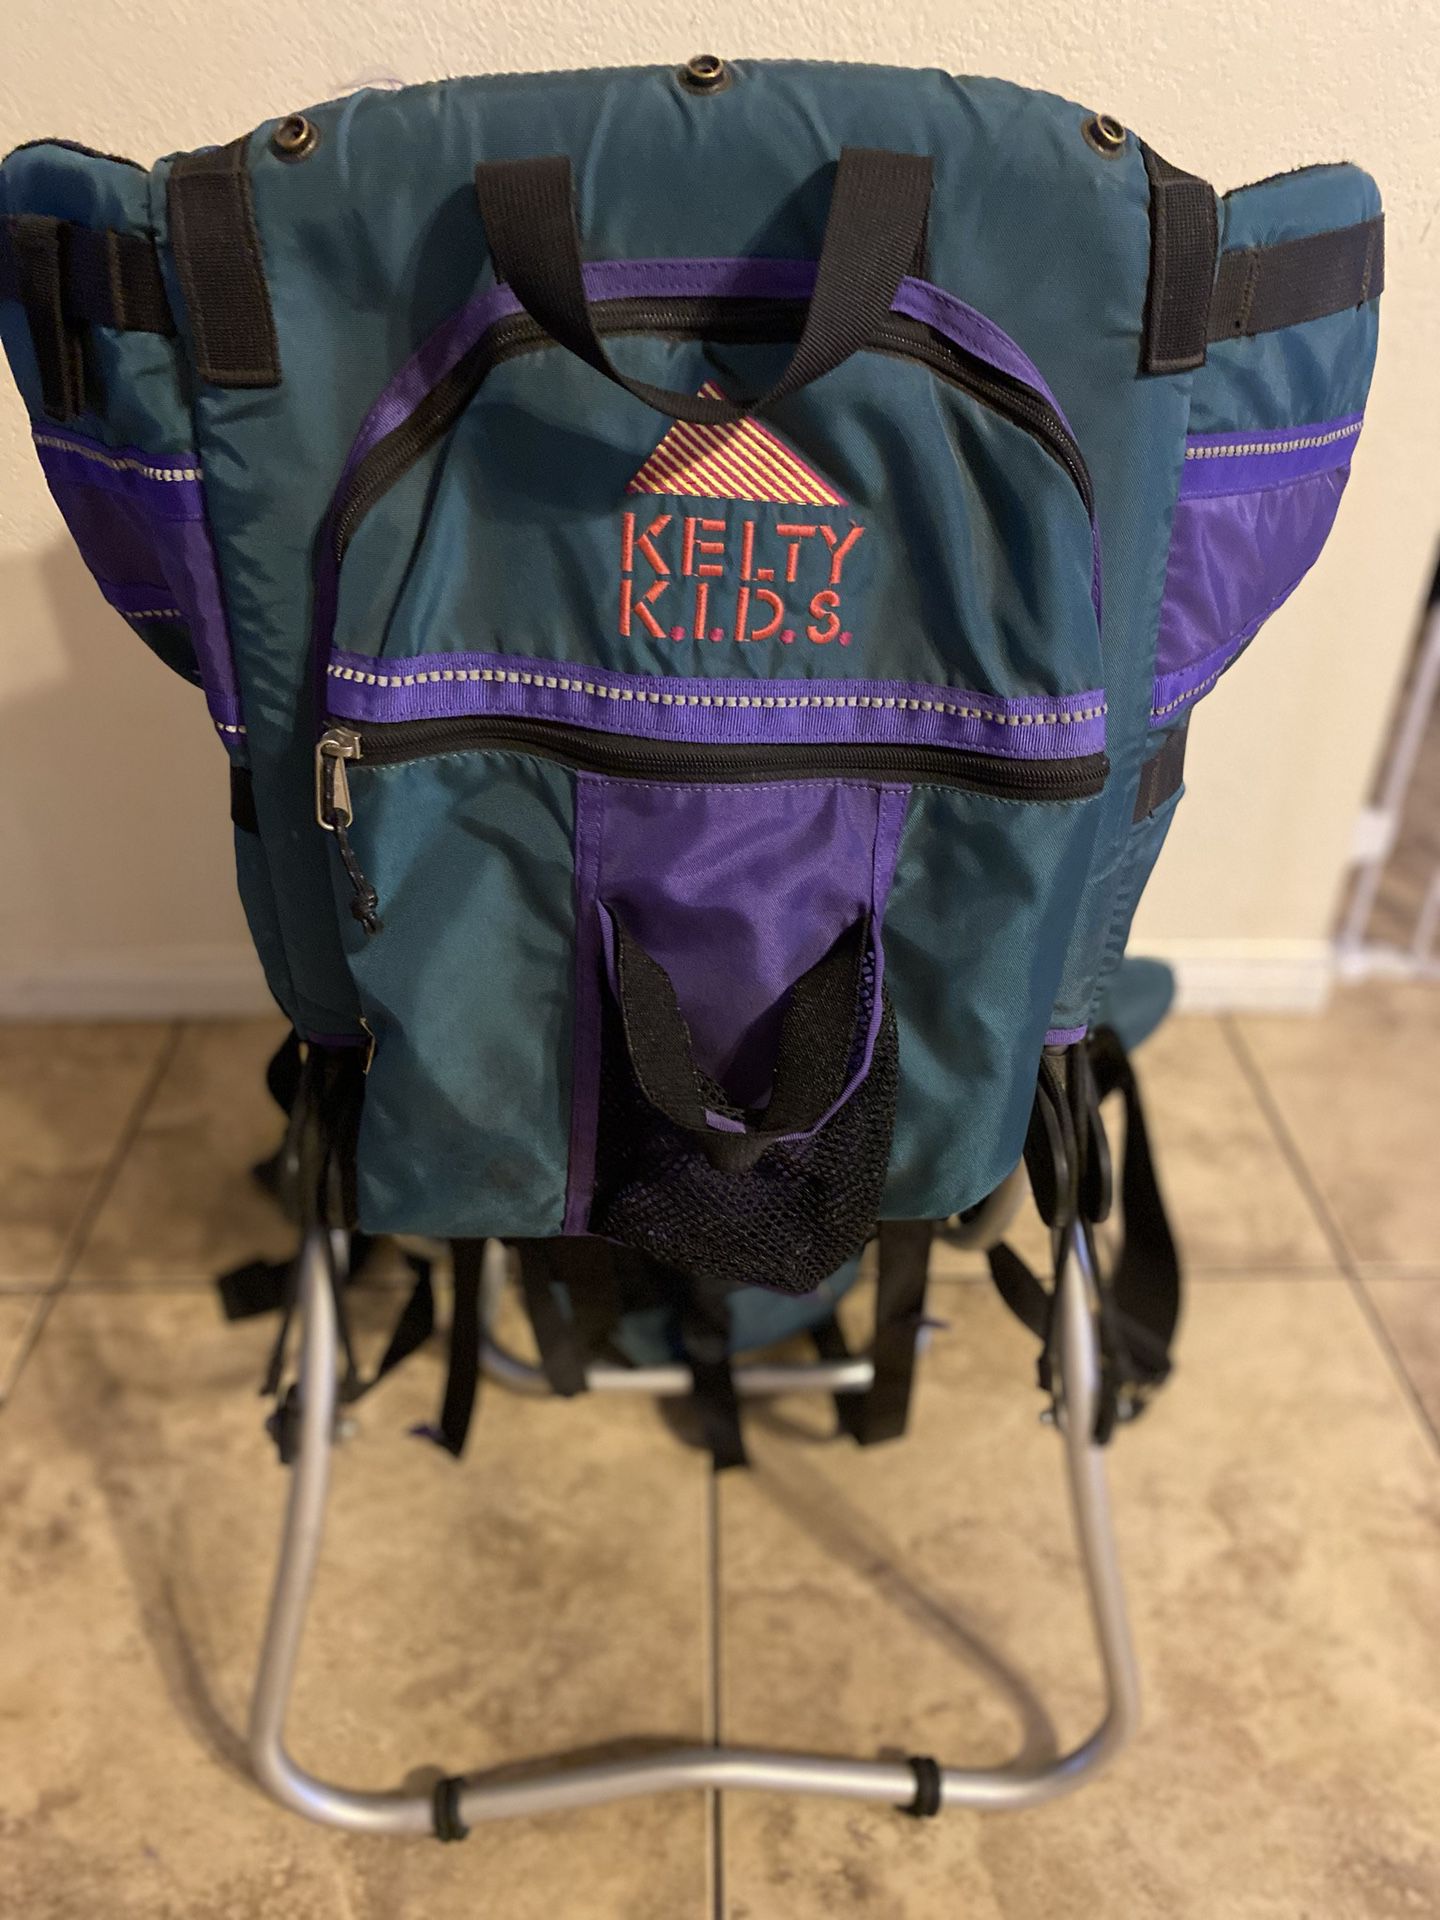 Kelty Kids hiking backpack